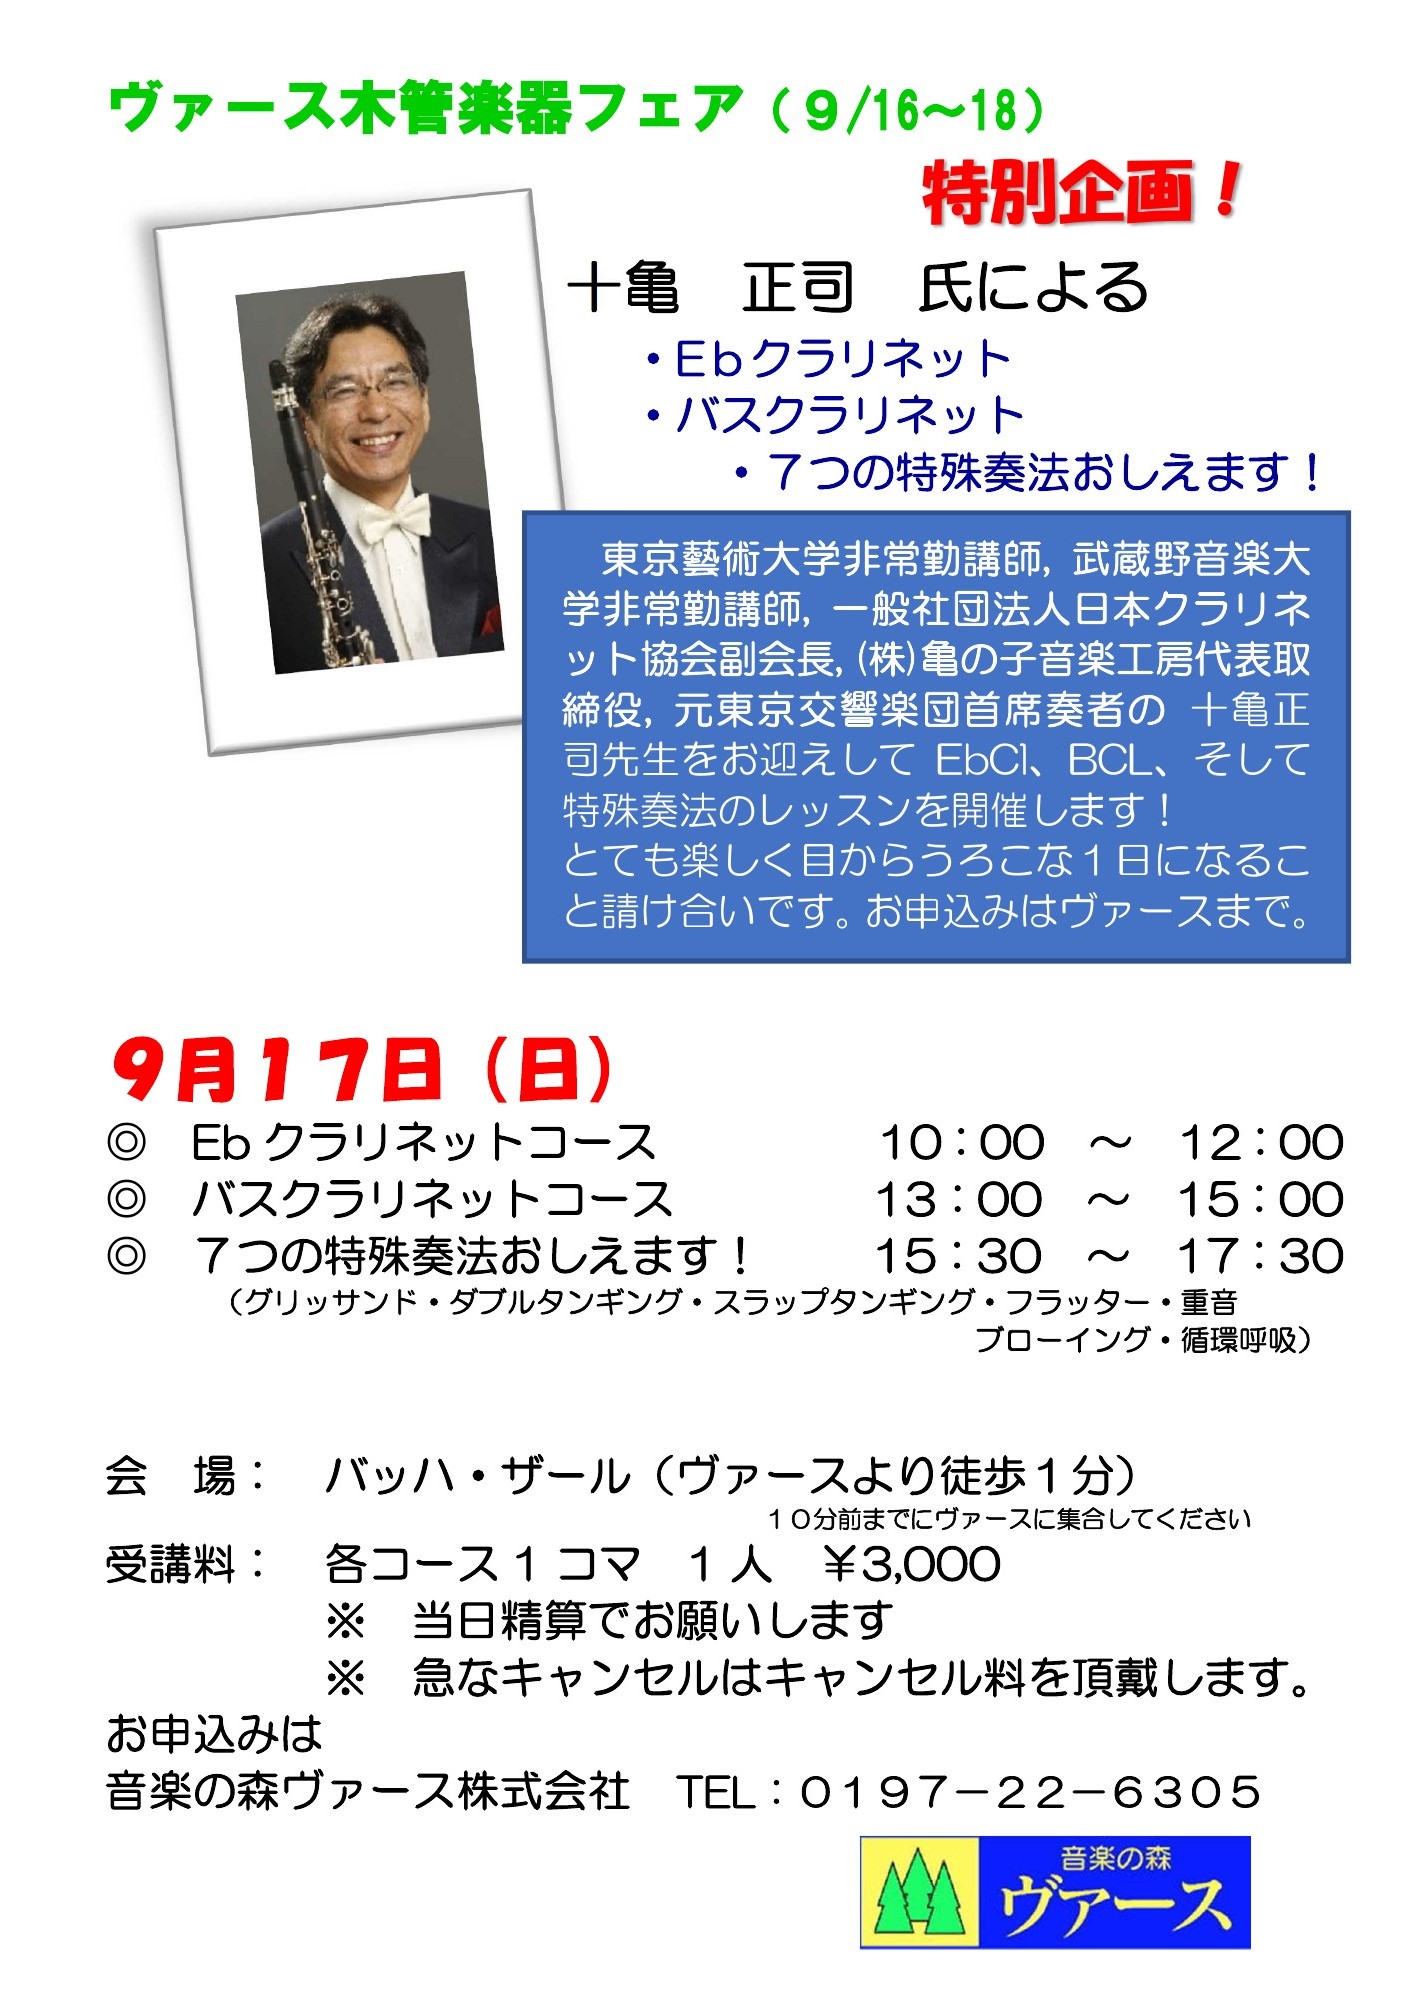 【十亀正司氏によるクラリネット講習会】9月17日に開催いたします。